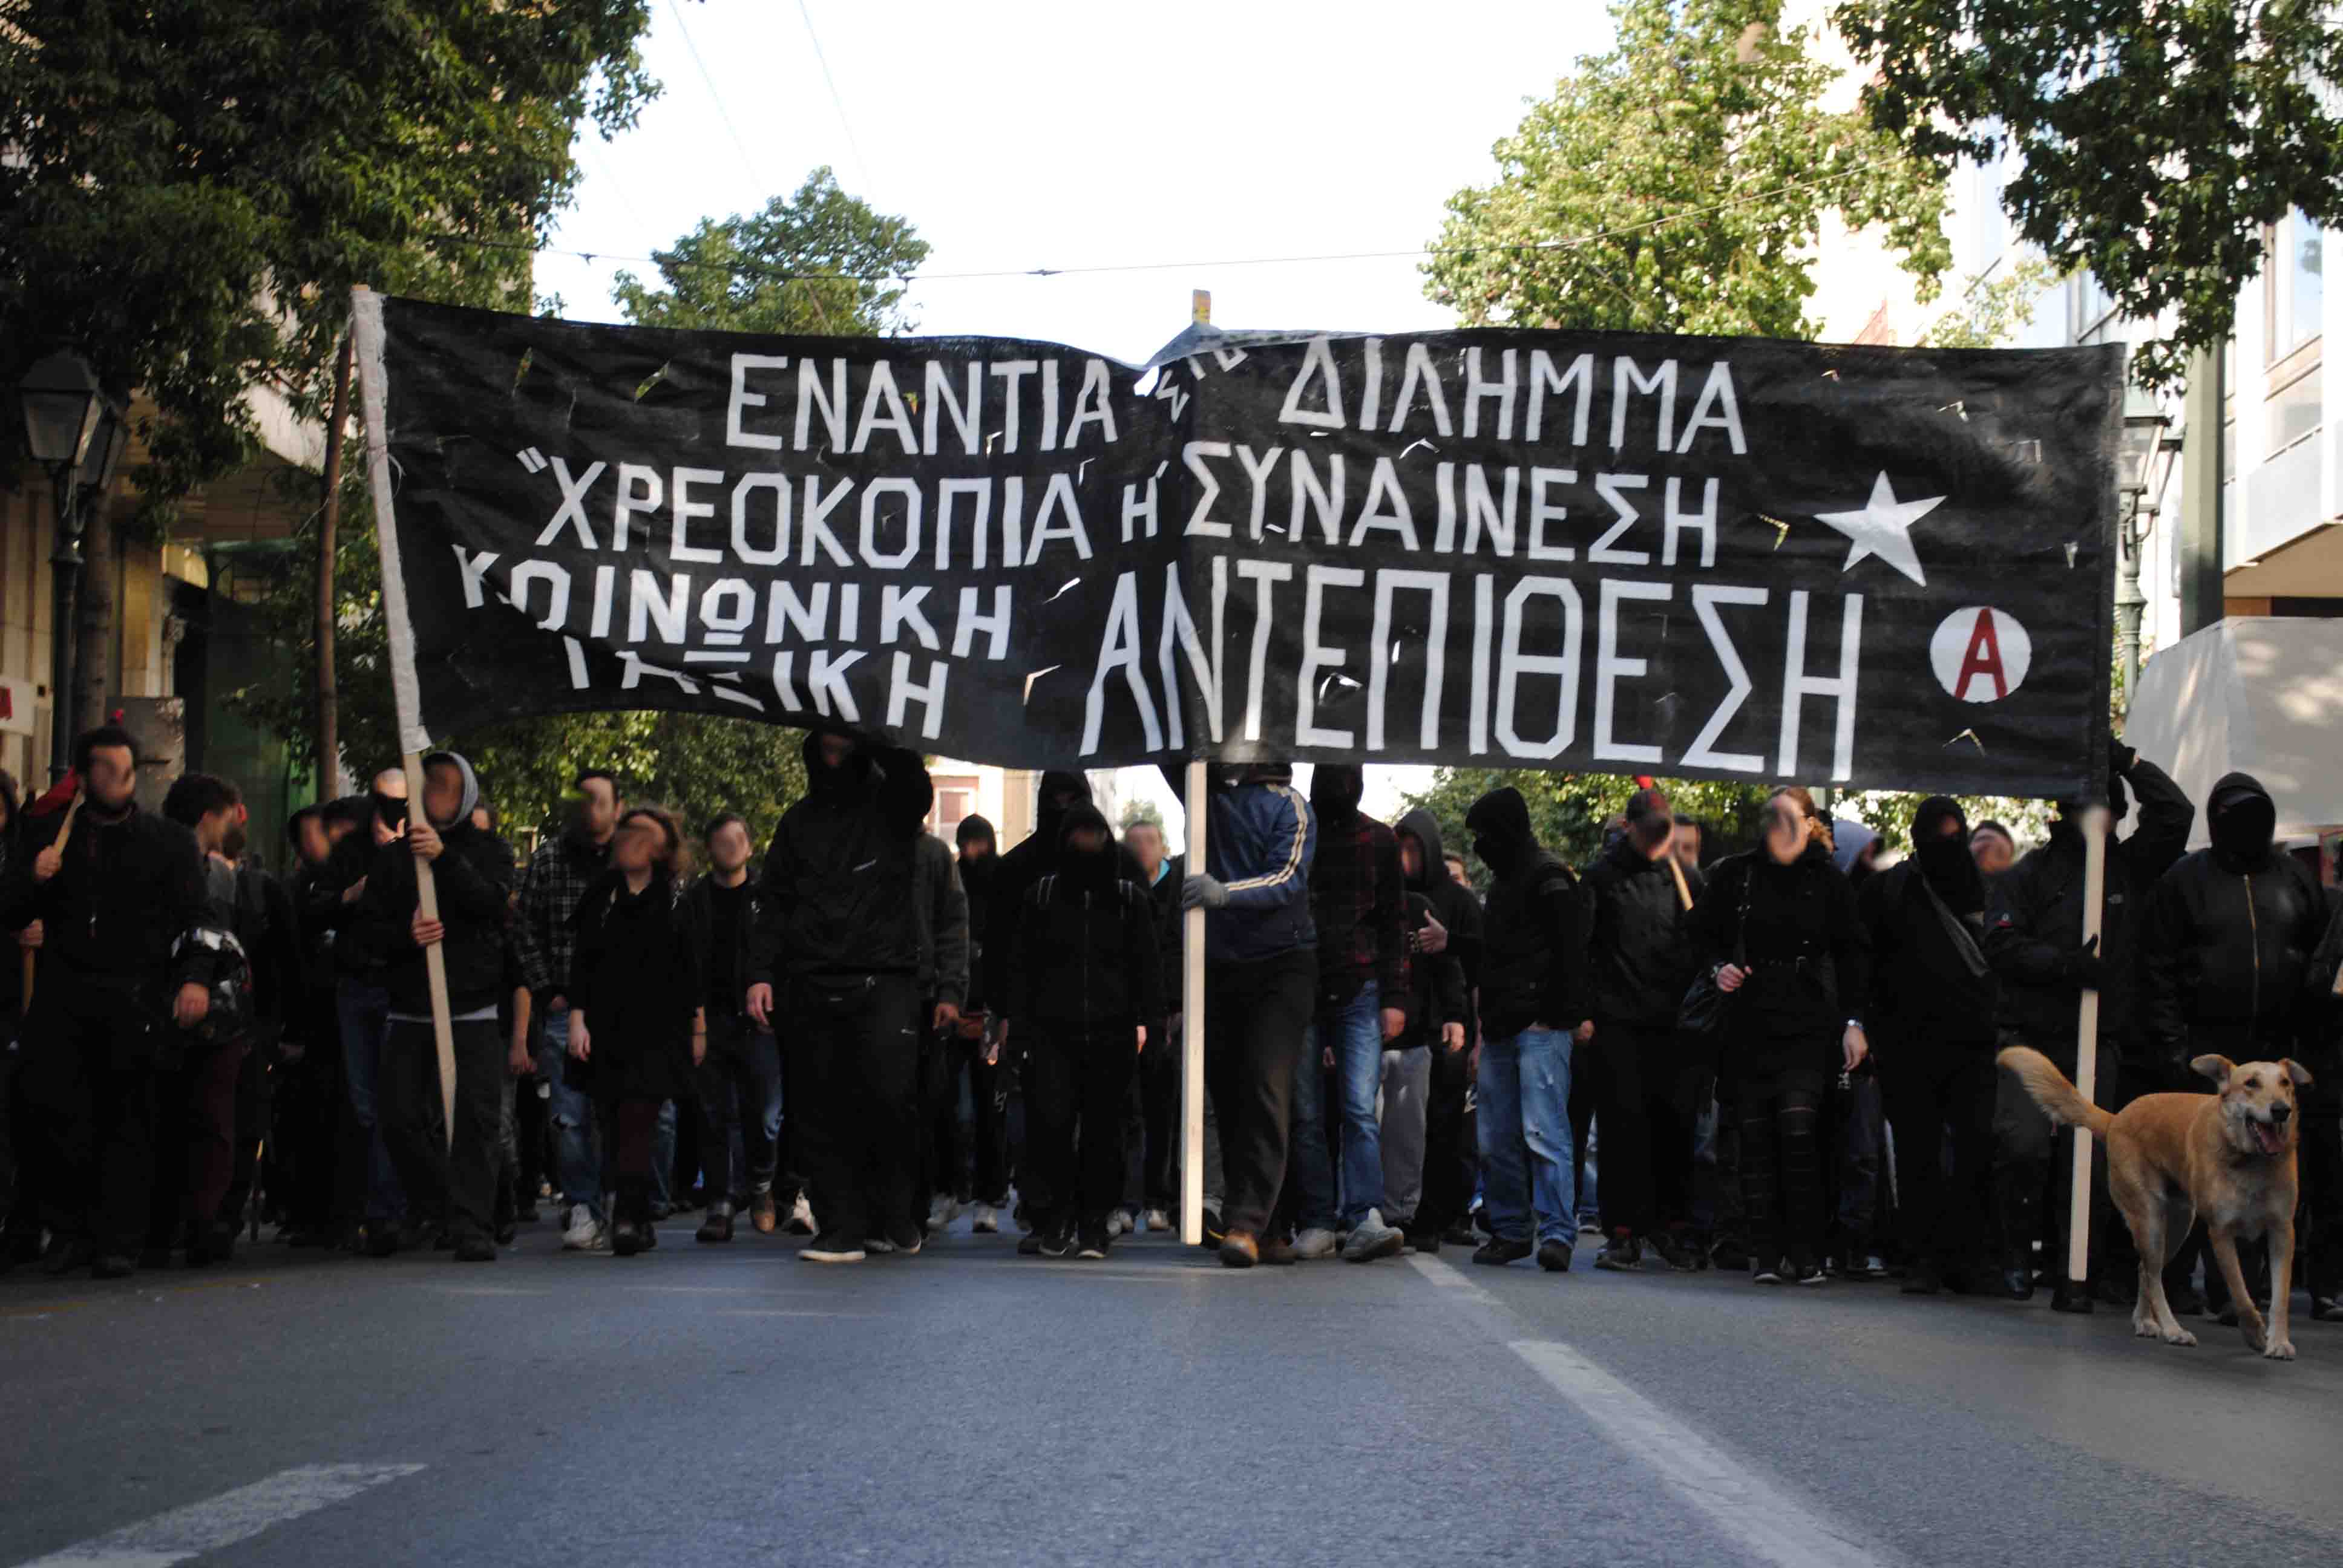 Fronttransparent einer anarchistischen Demonstration am 4.2. in Athen: Gegen das Dilemma „Einwilligung oder Pleite“ – Gegenangriff von Gesellschaft und Klasse (Quelle: Indymedia Athens)